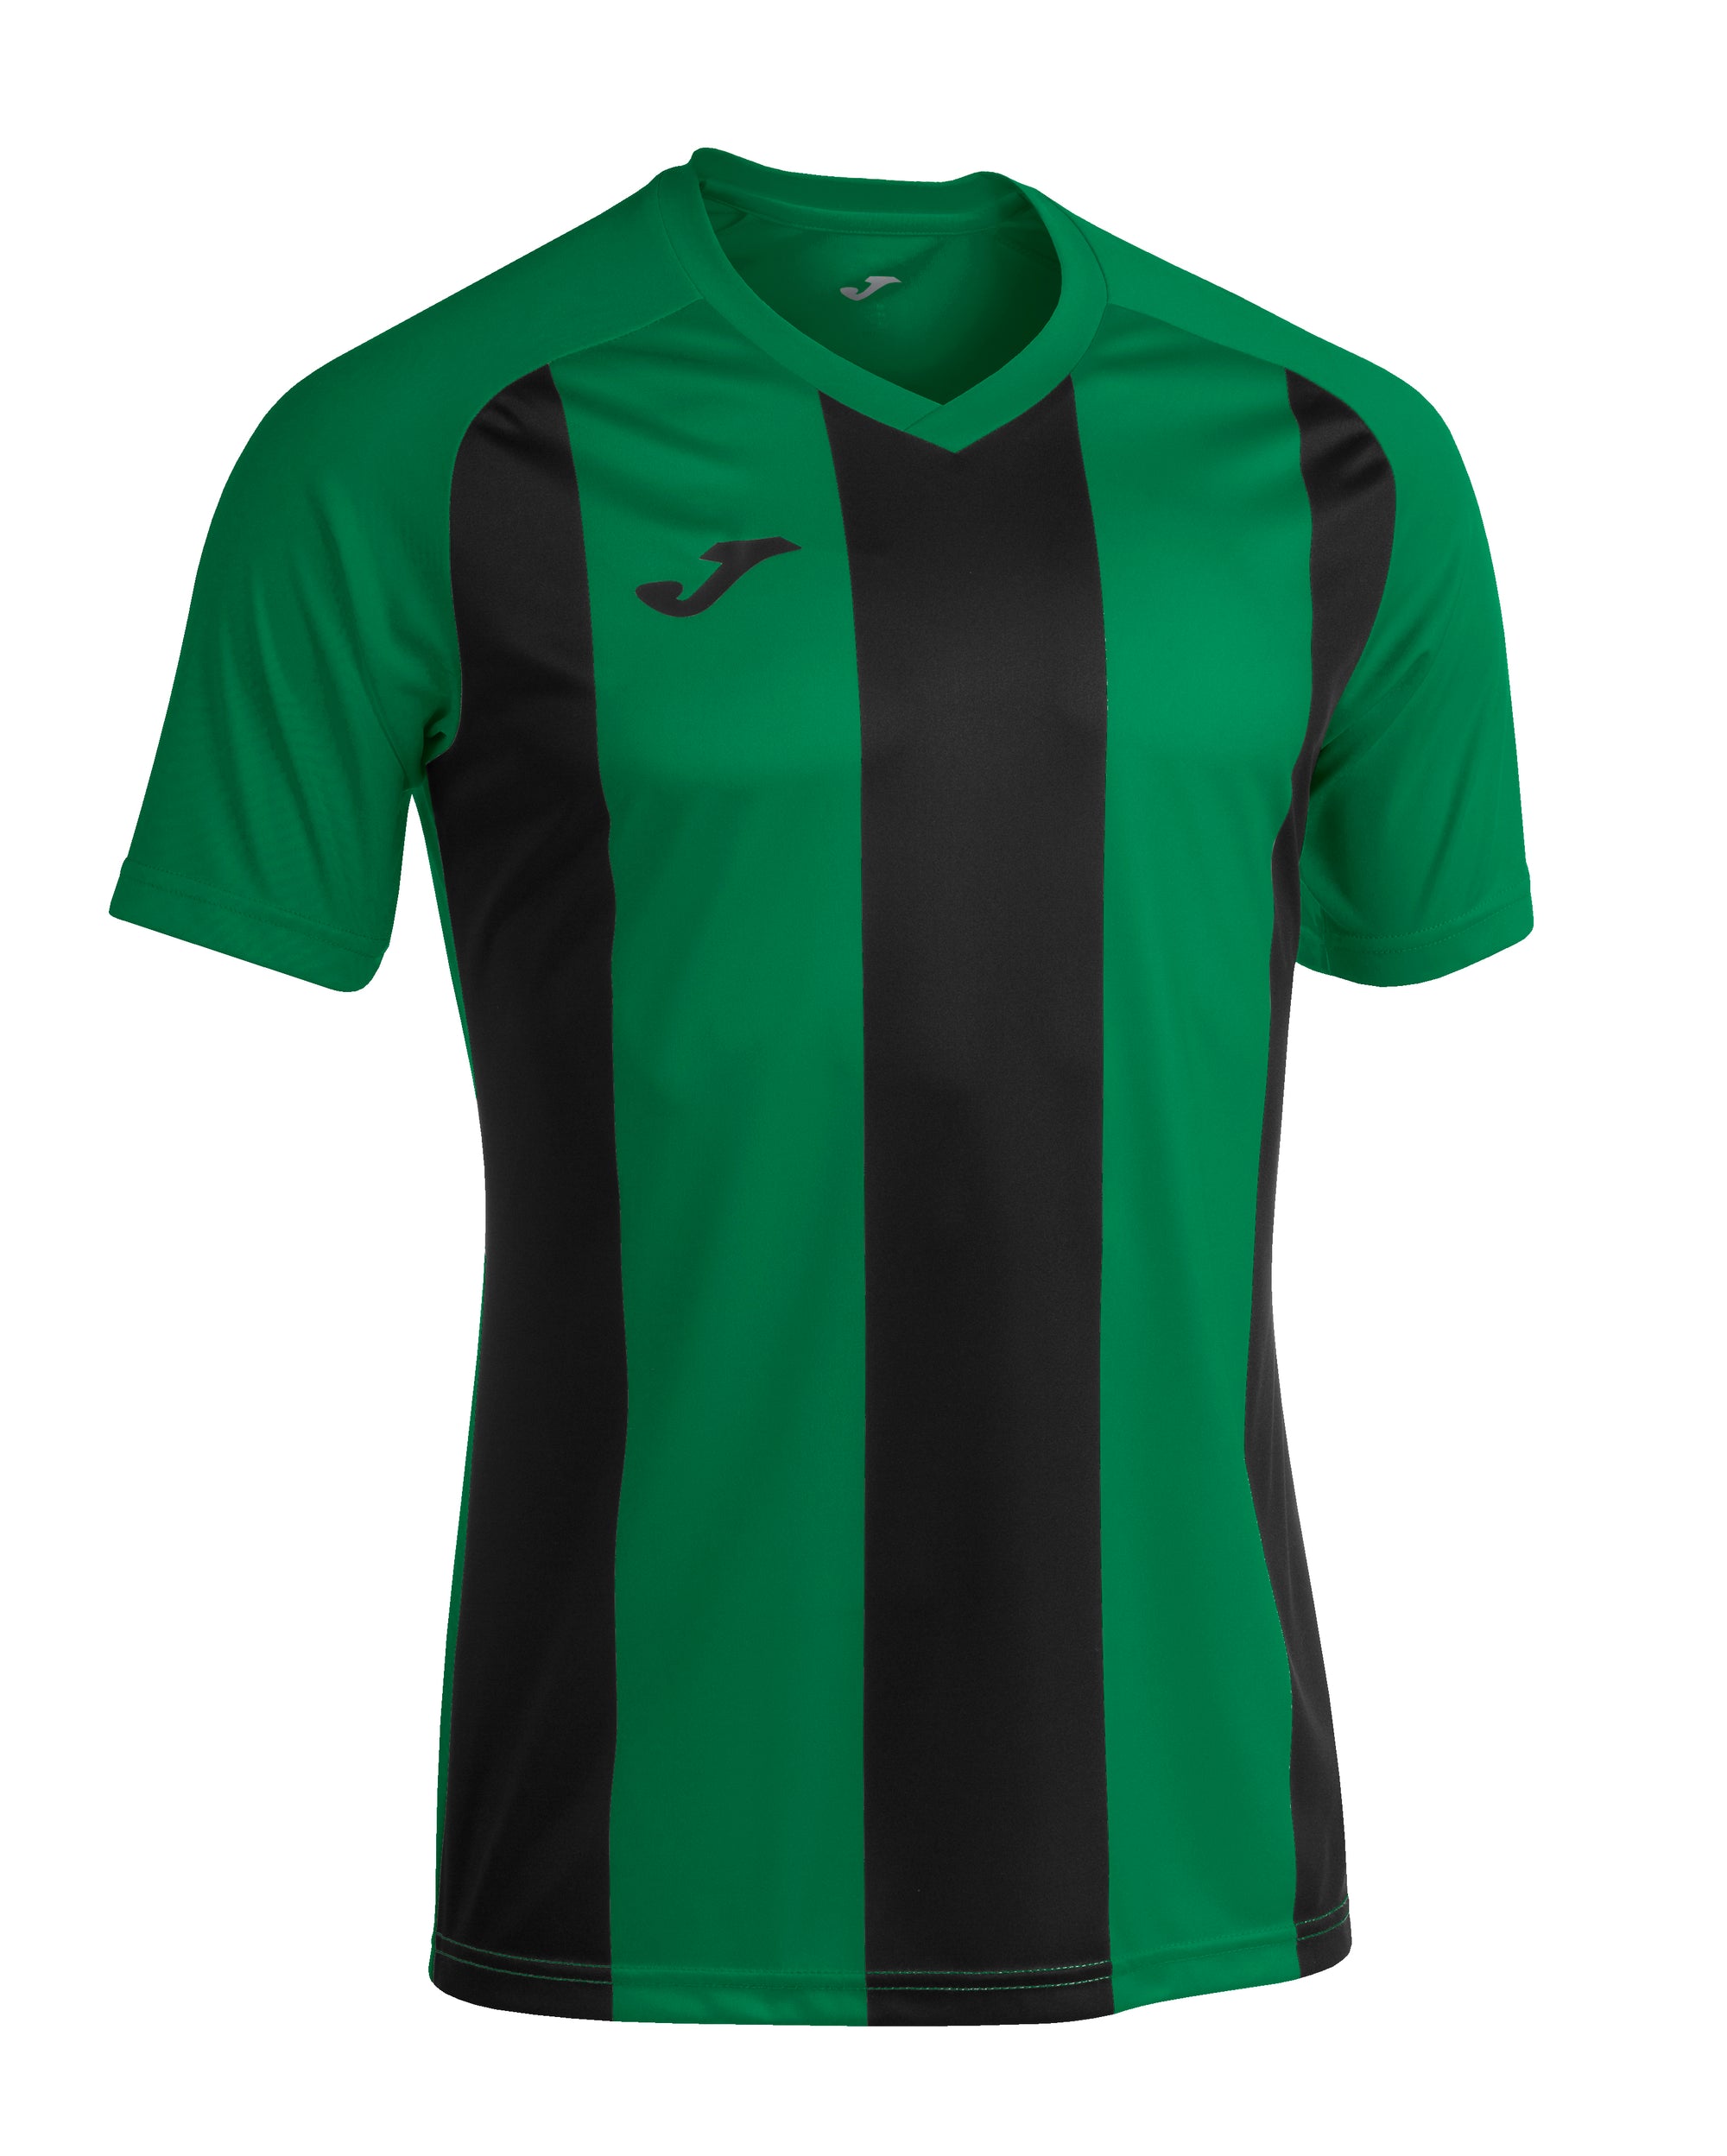 Joma Pisa II Short Sleeved T-Shirt - Green Medium/Black